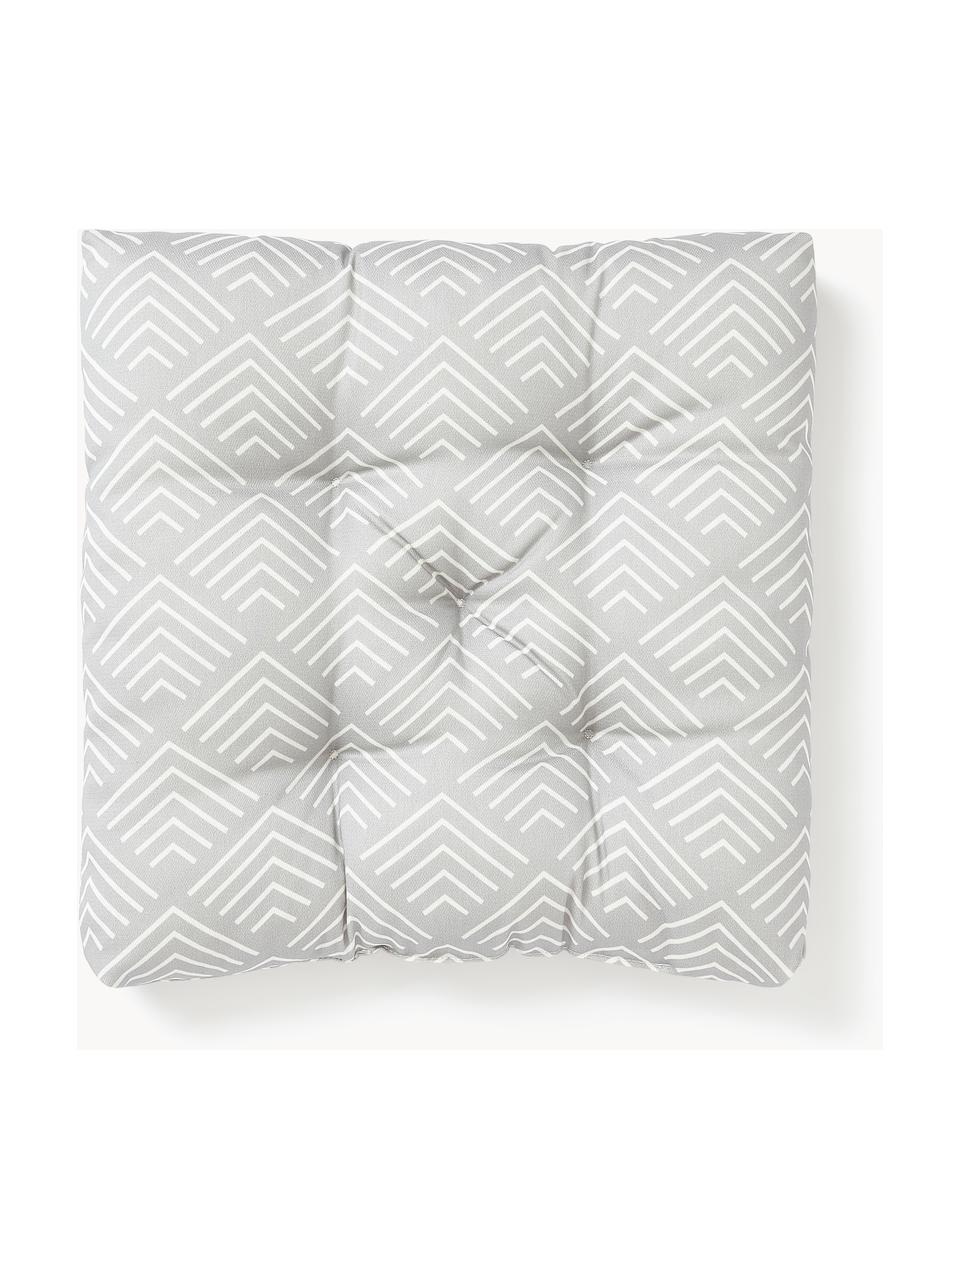 Outdoor stoelkussen Milano met grafisch patroon, Lichtgrijs, wit, B 40 x L 40 cm